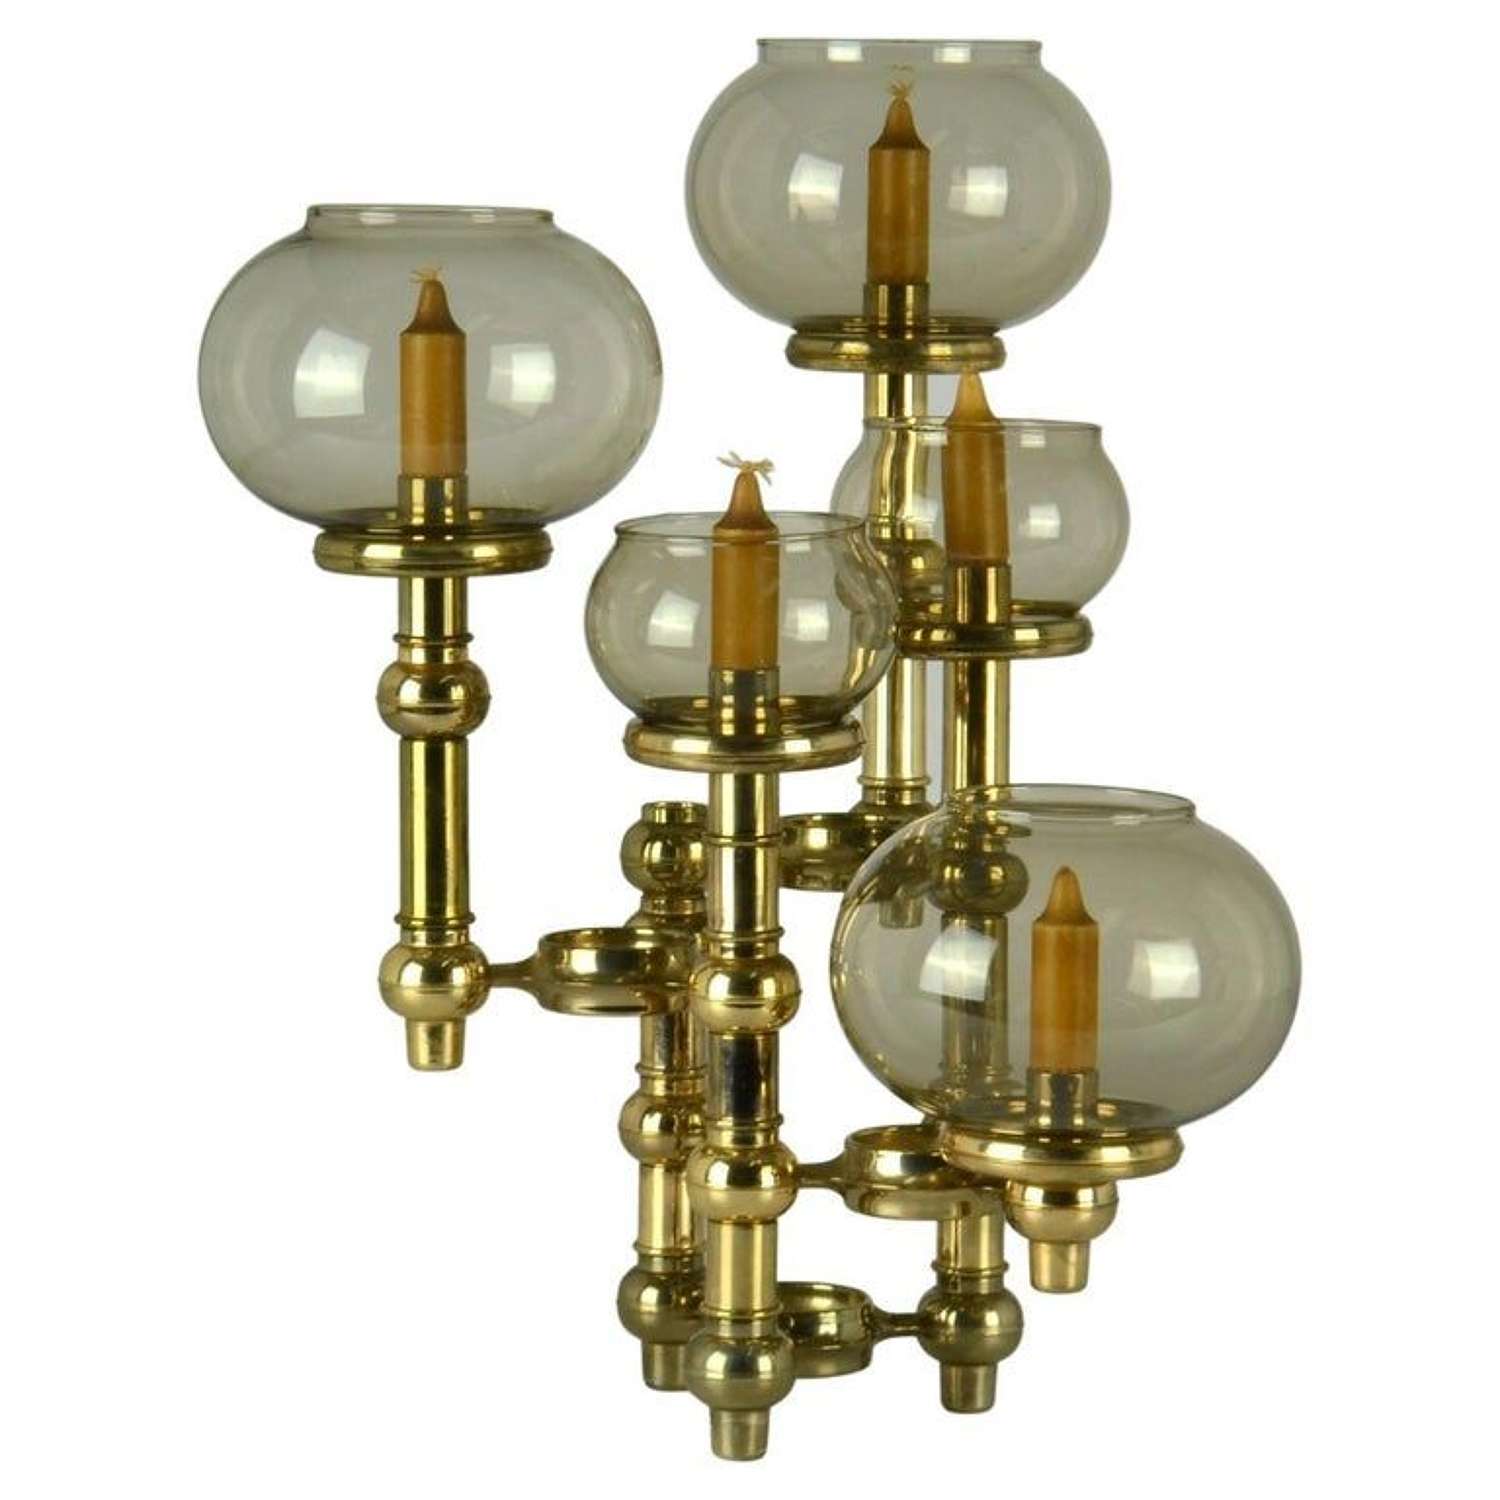 Scandinavian Modern Modular Brass Candelabra with Glass Shades